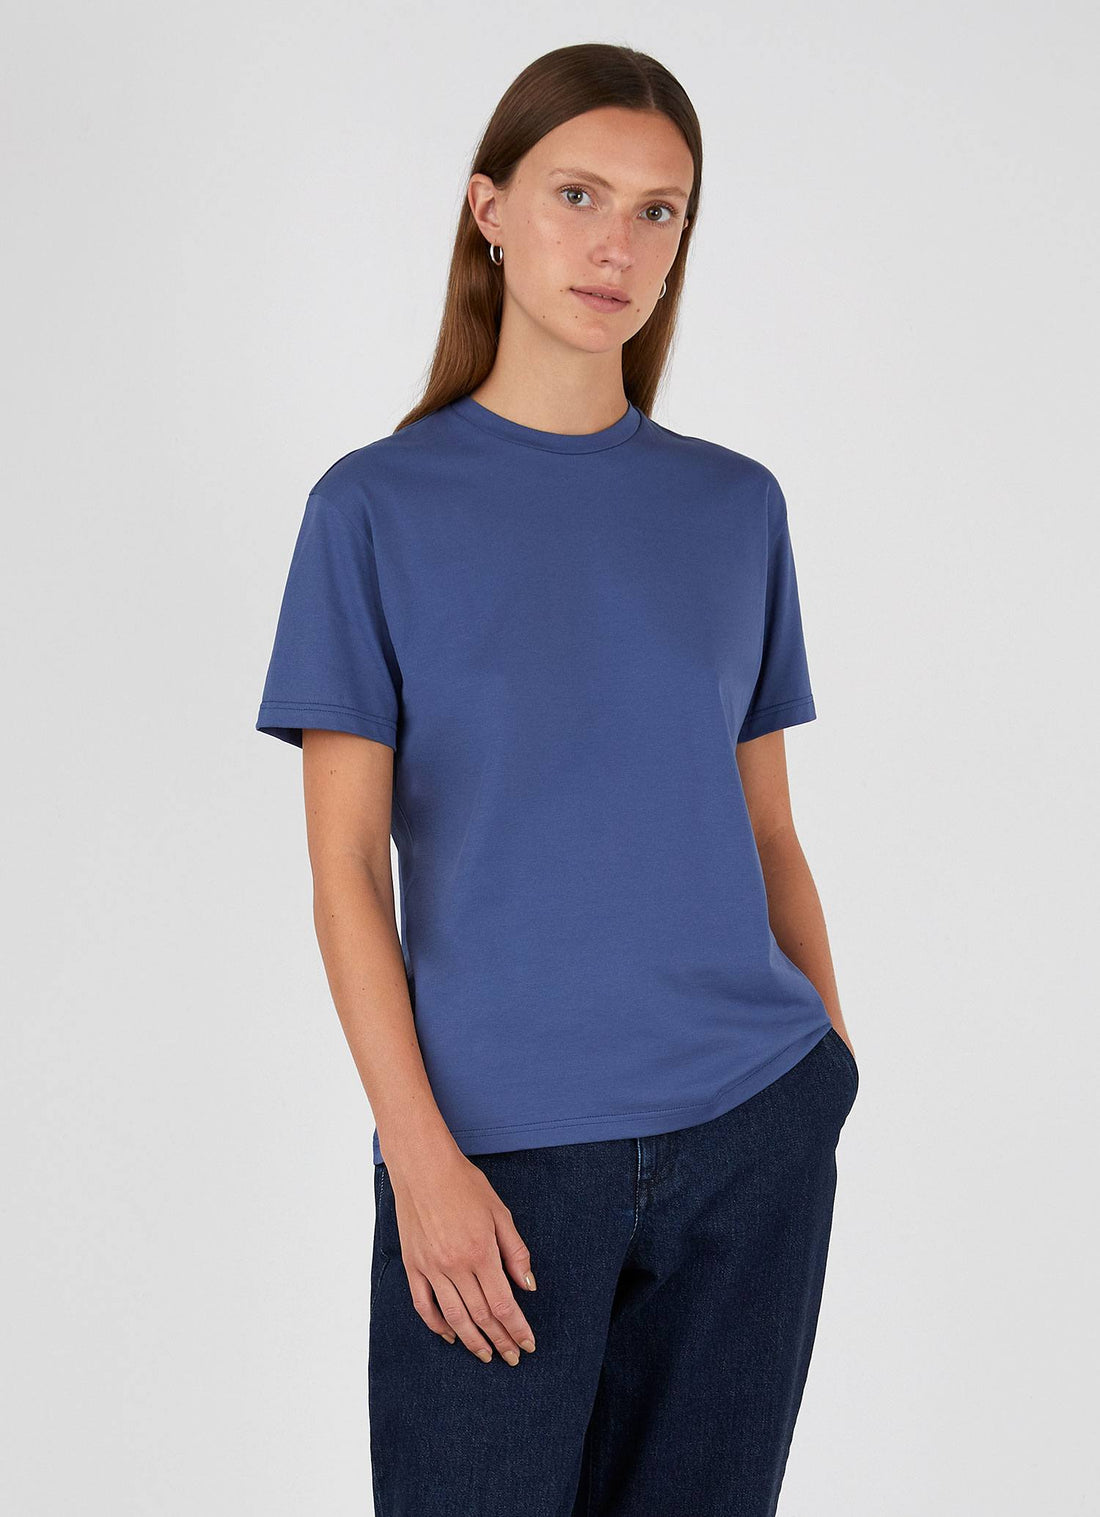 Women's Boy Fit T-shirt in Atlantic Blue